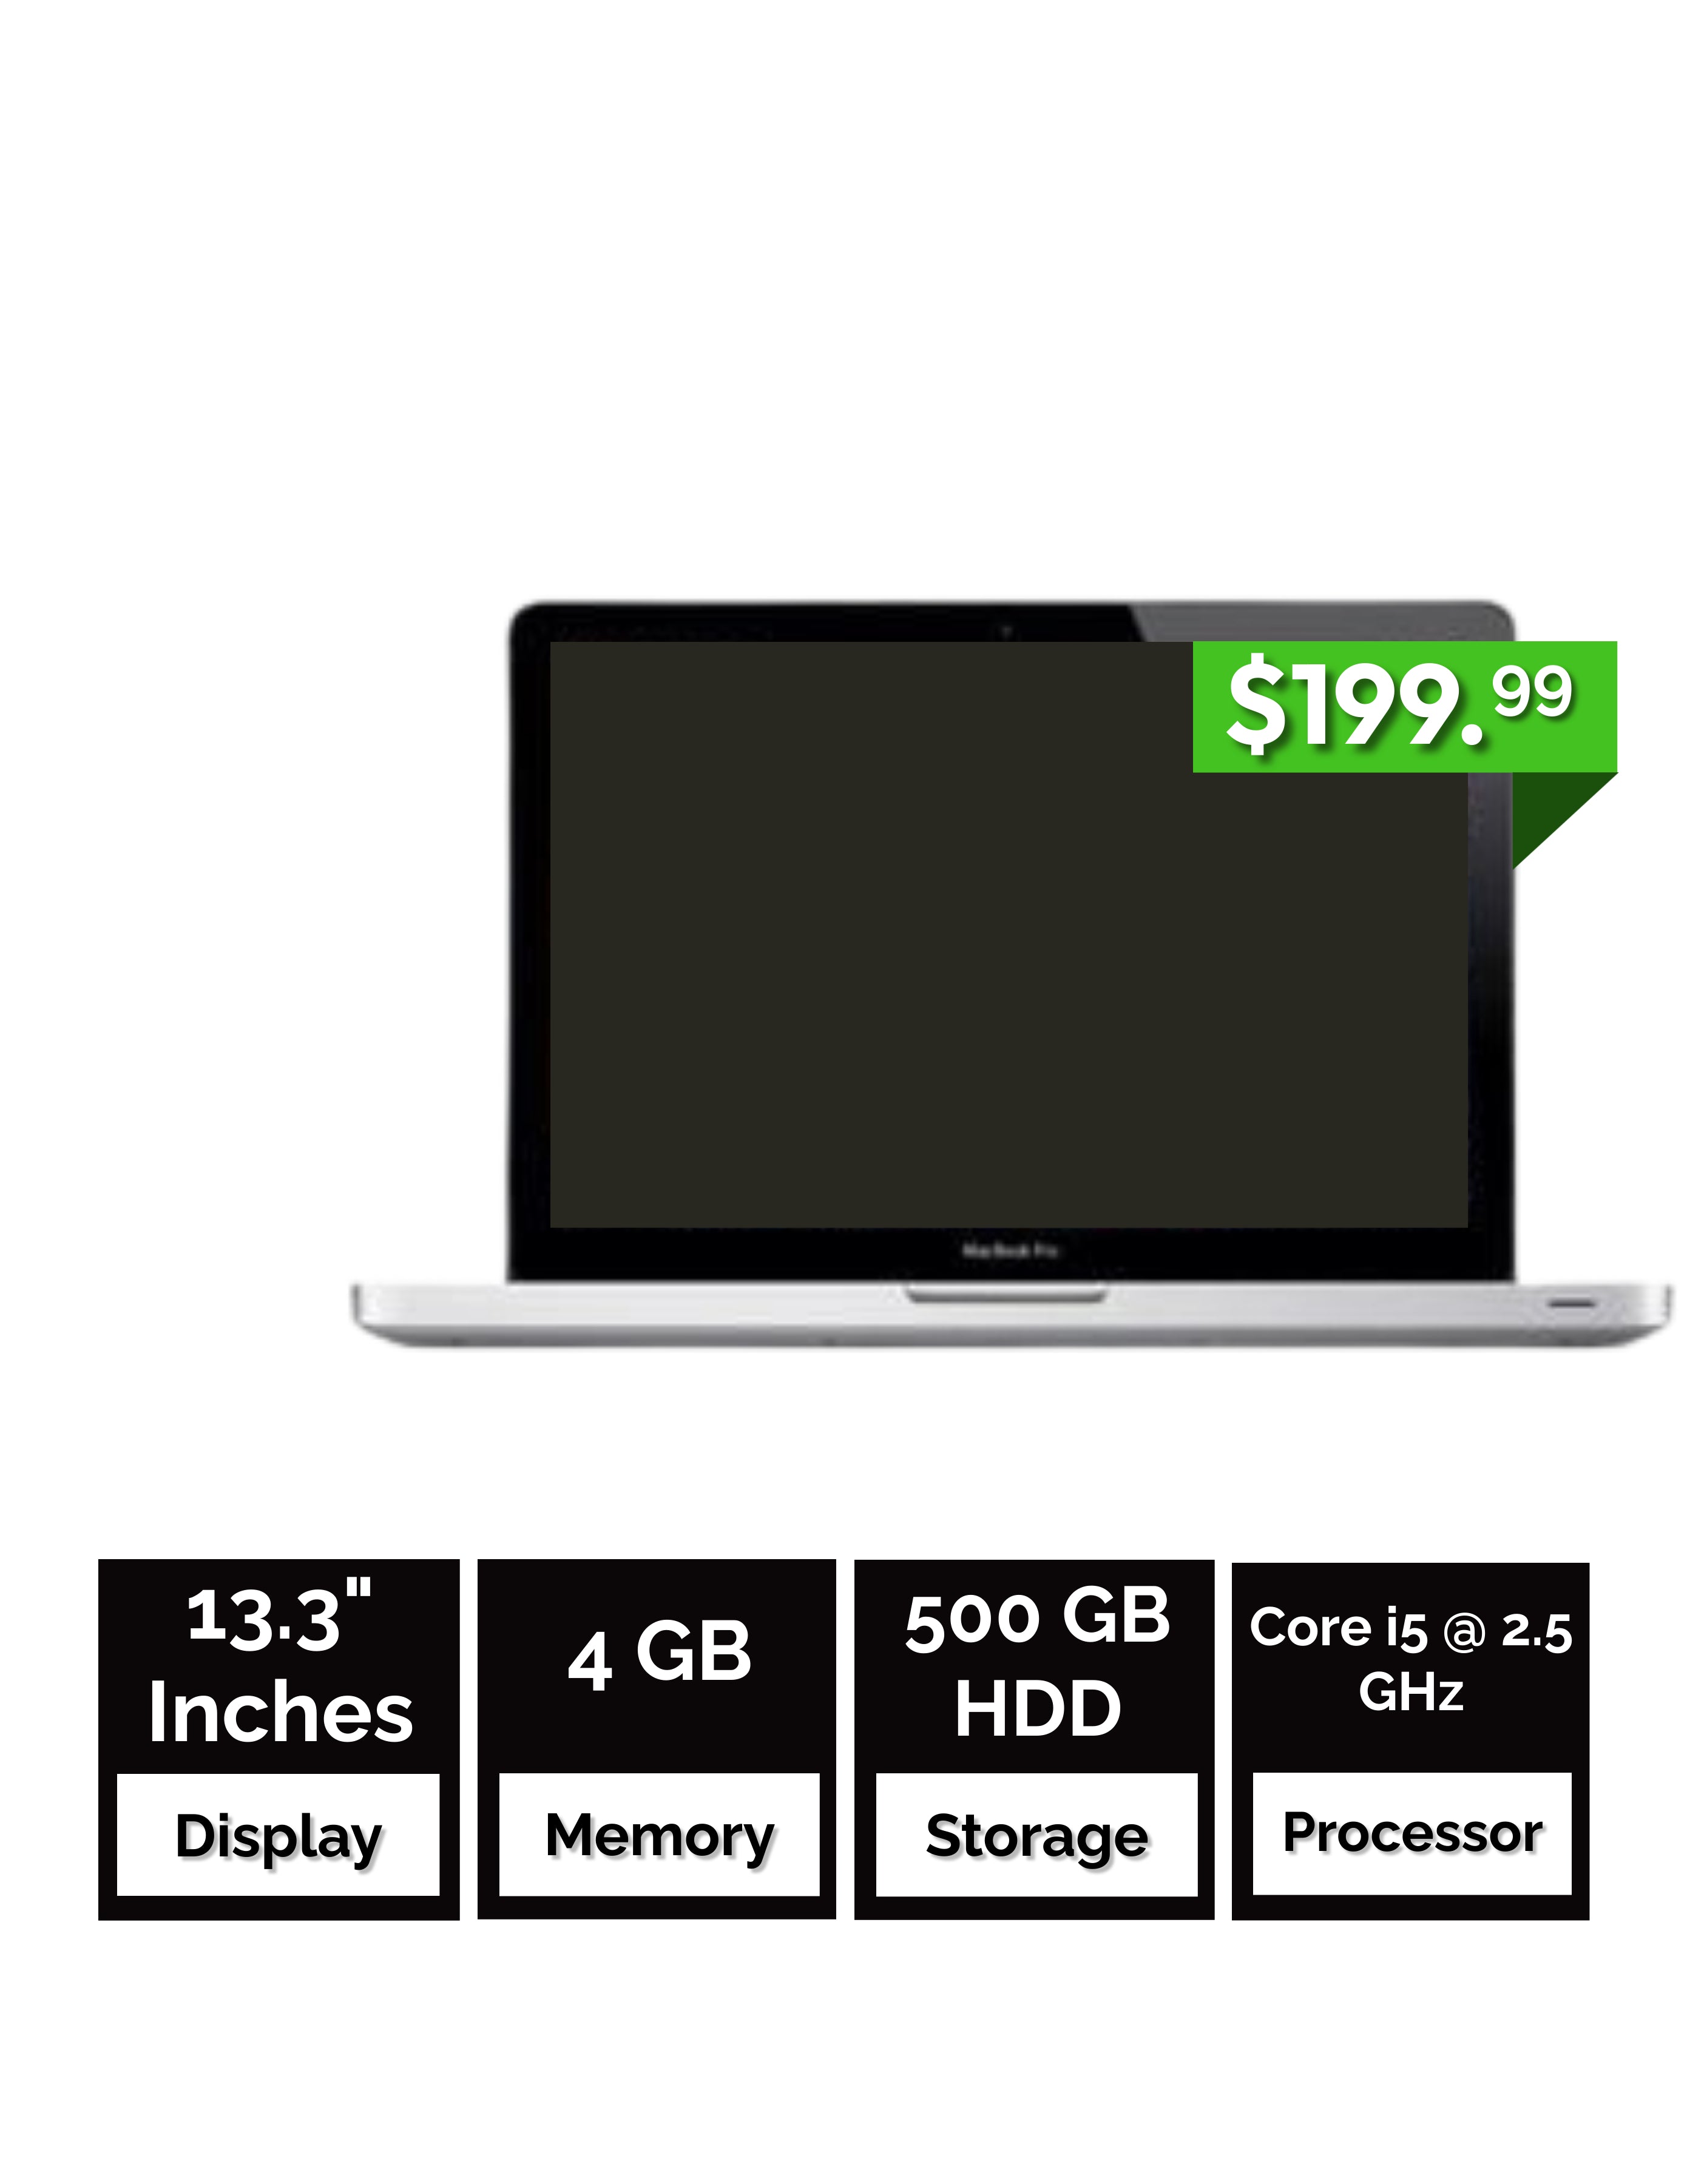 専用 MacBook Pro 500GB Mid 2012